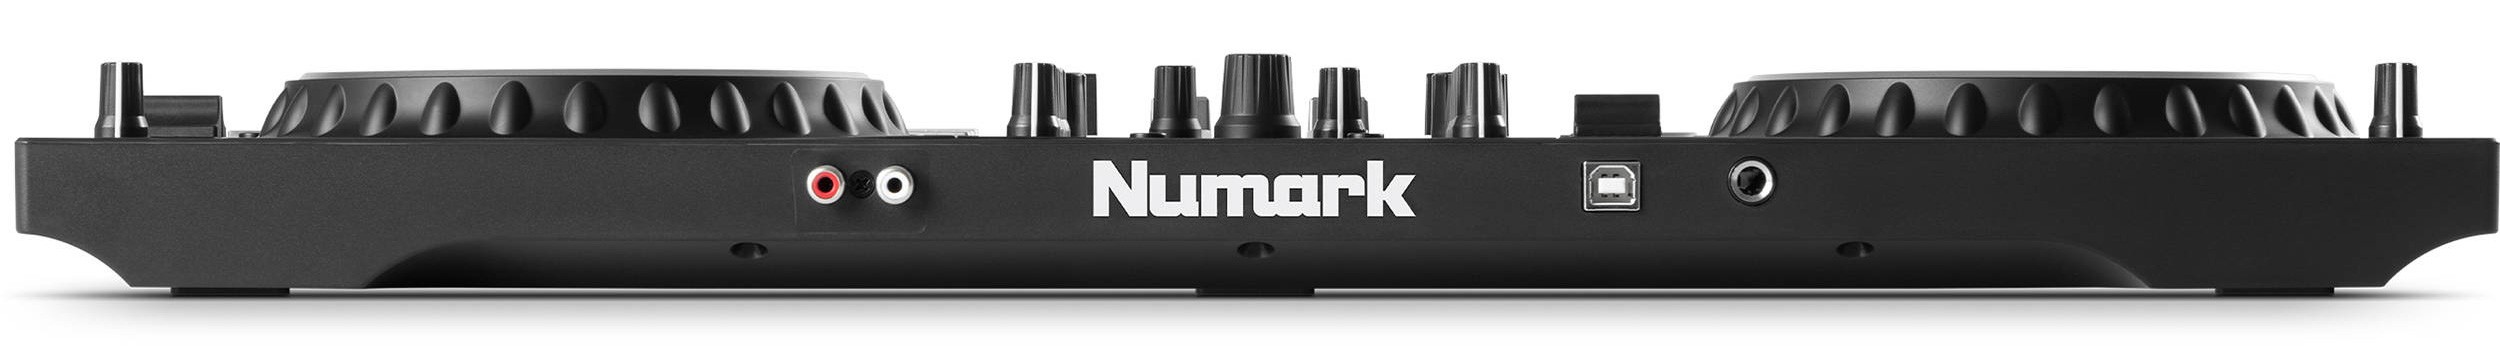 Детальная картинка товара NUMARK MixTrack Platinum FX в магазине Музыкальная Тема